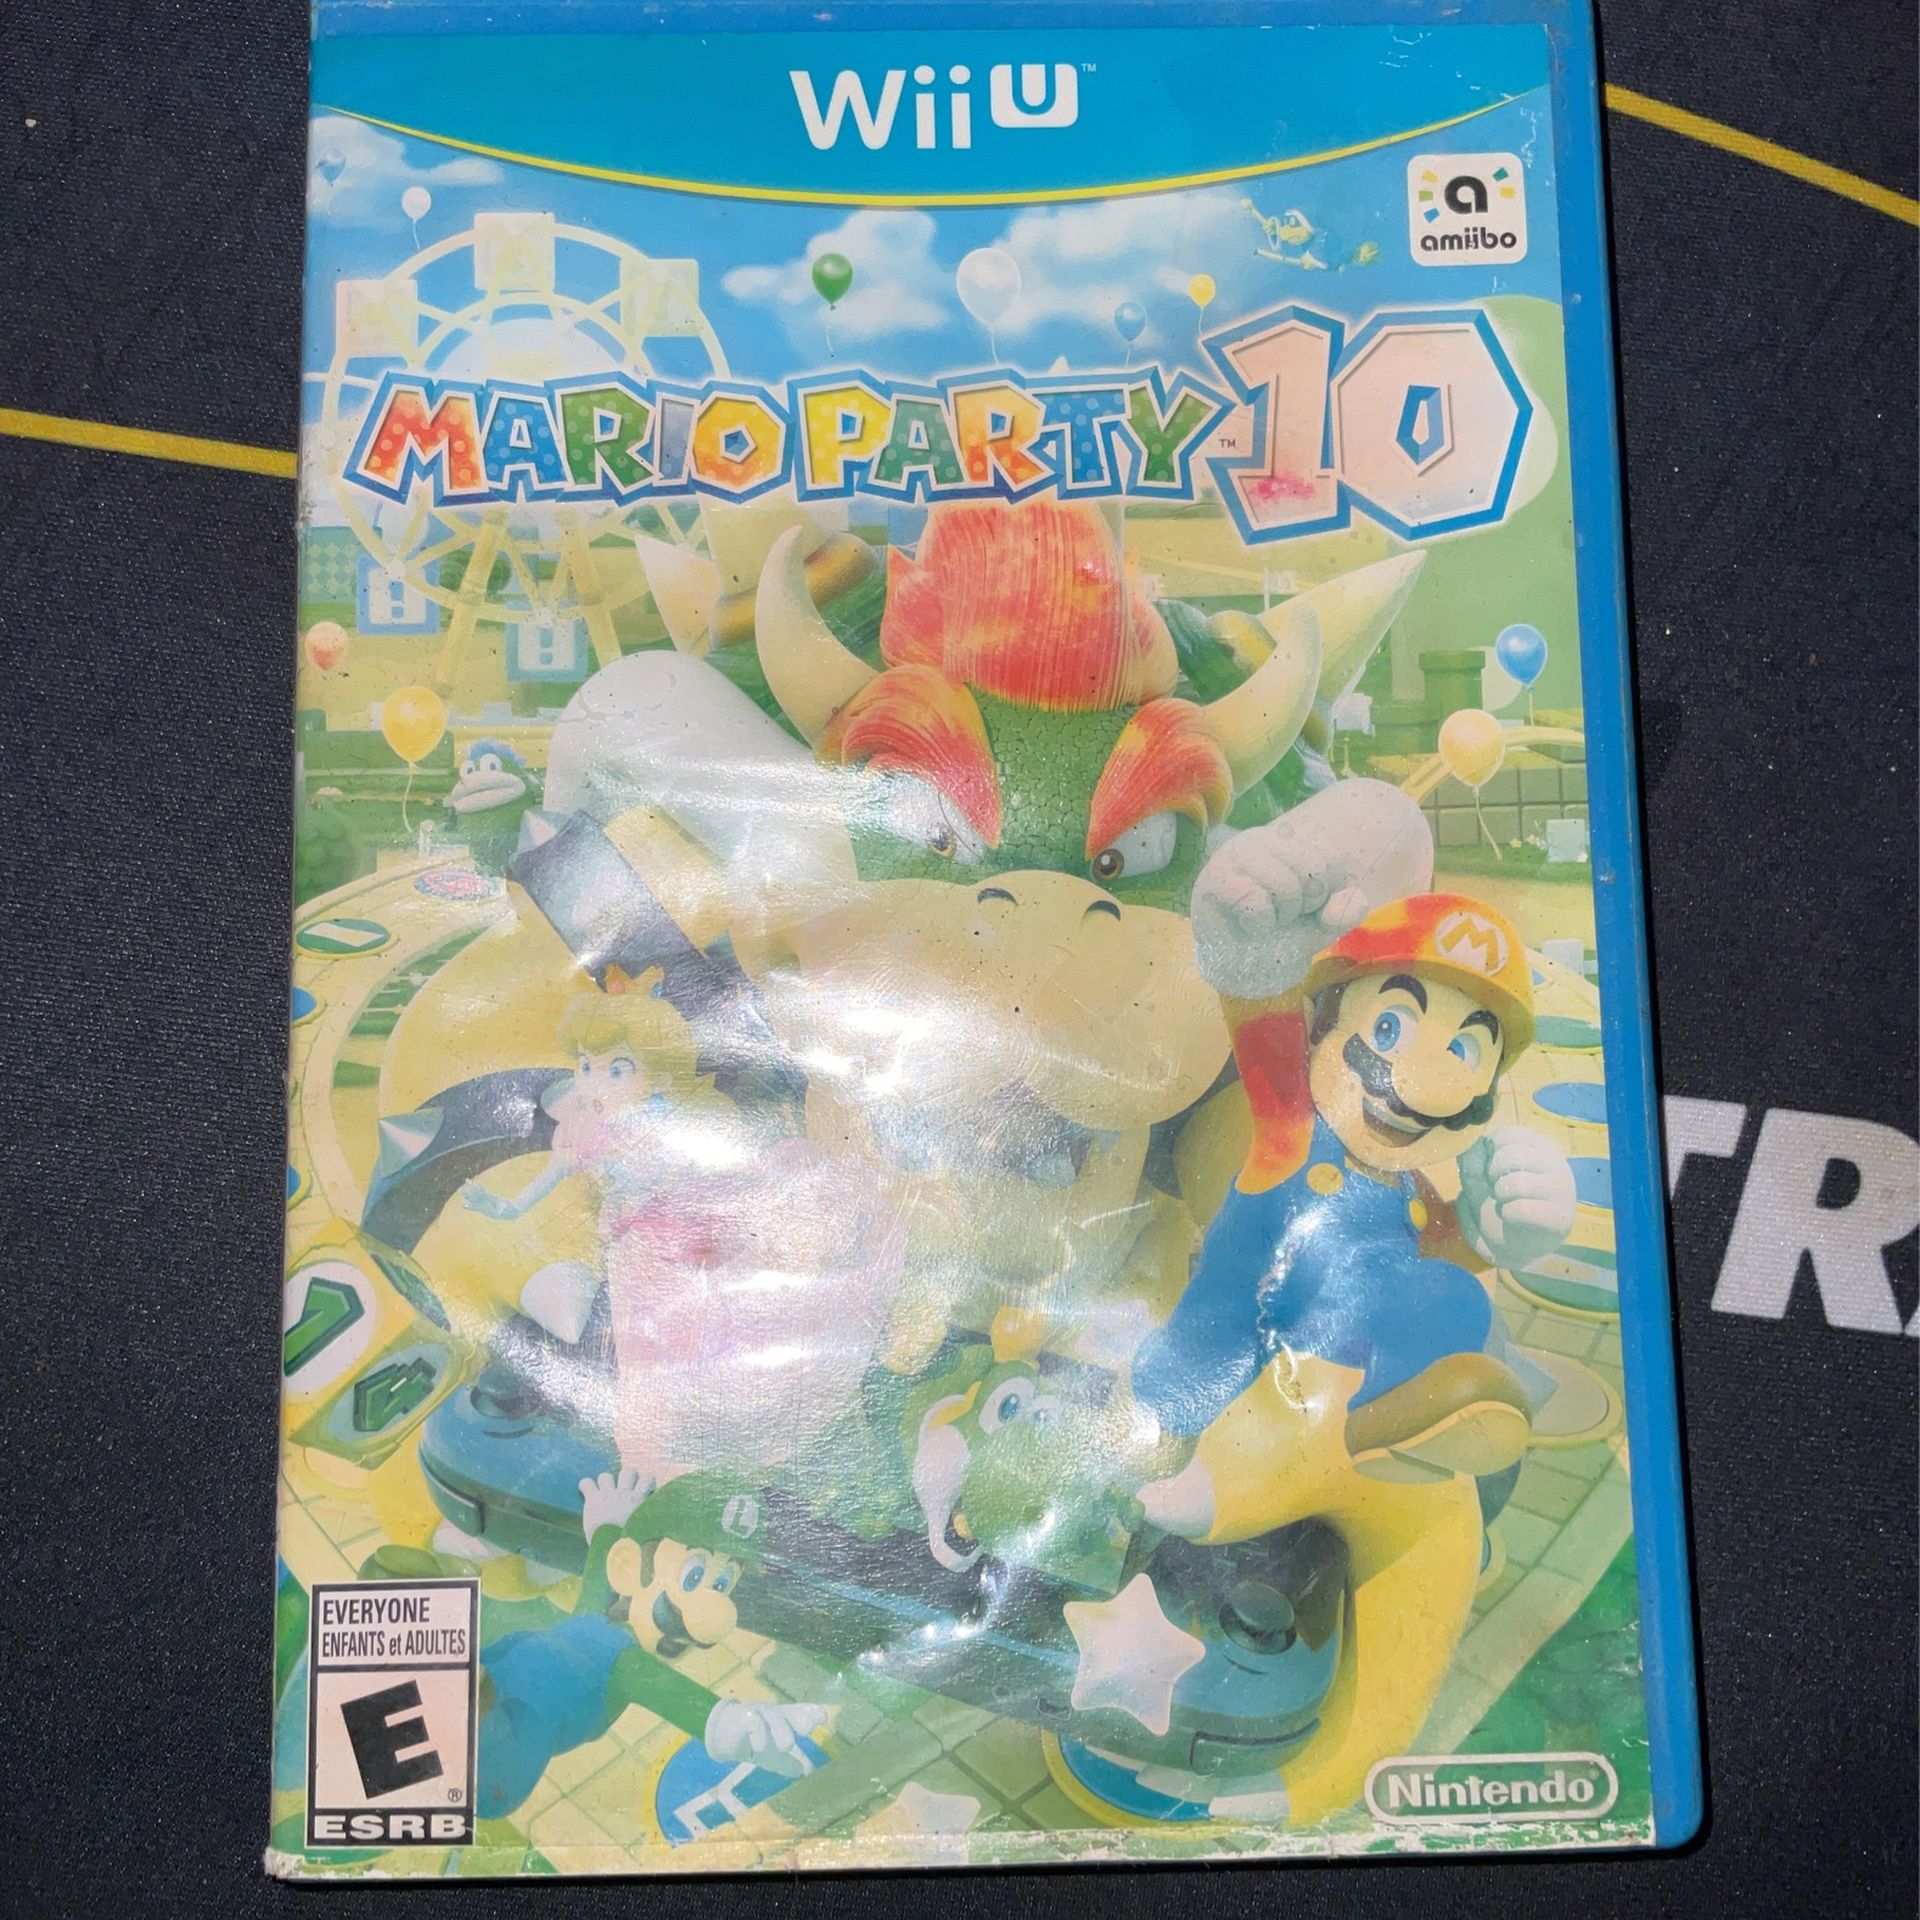 Mario, Party 10 Wii U